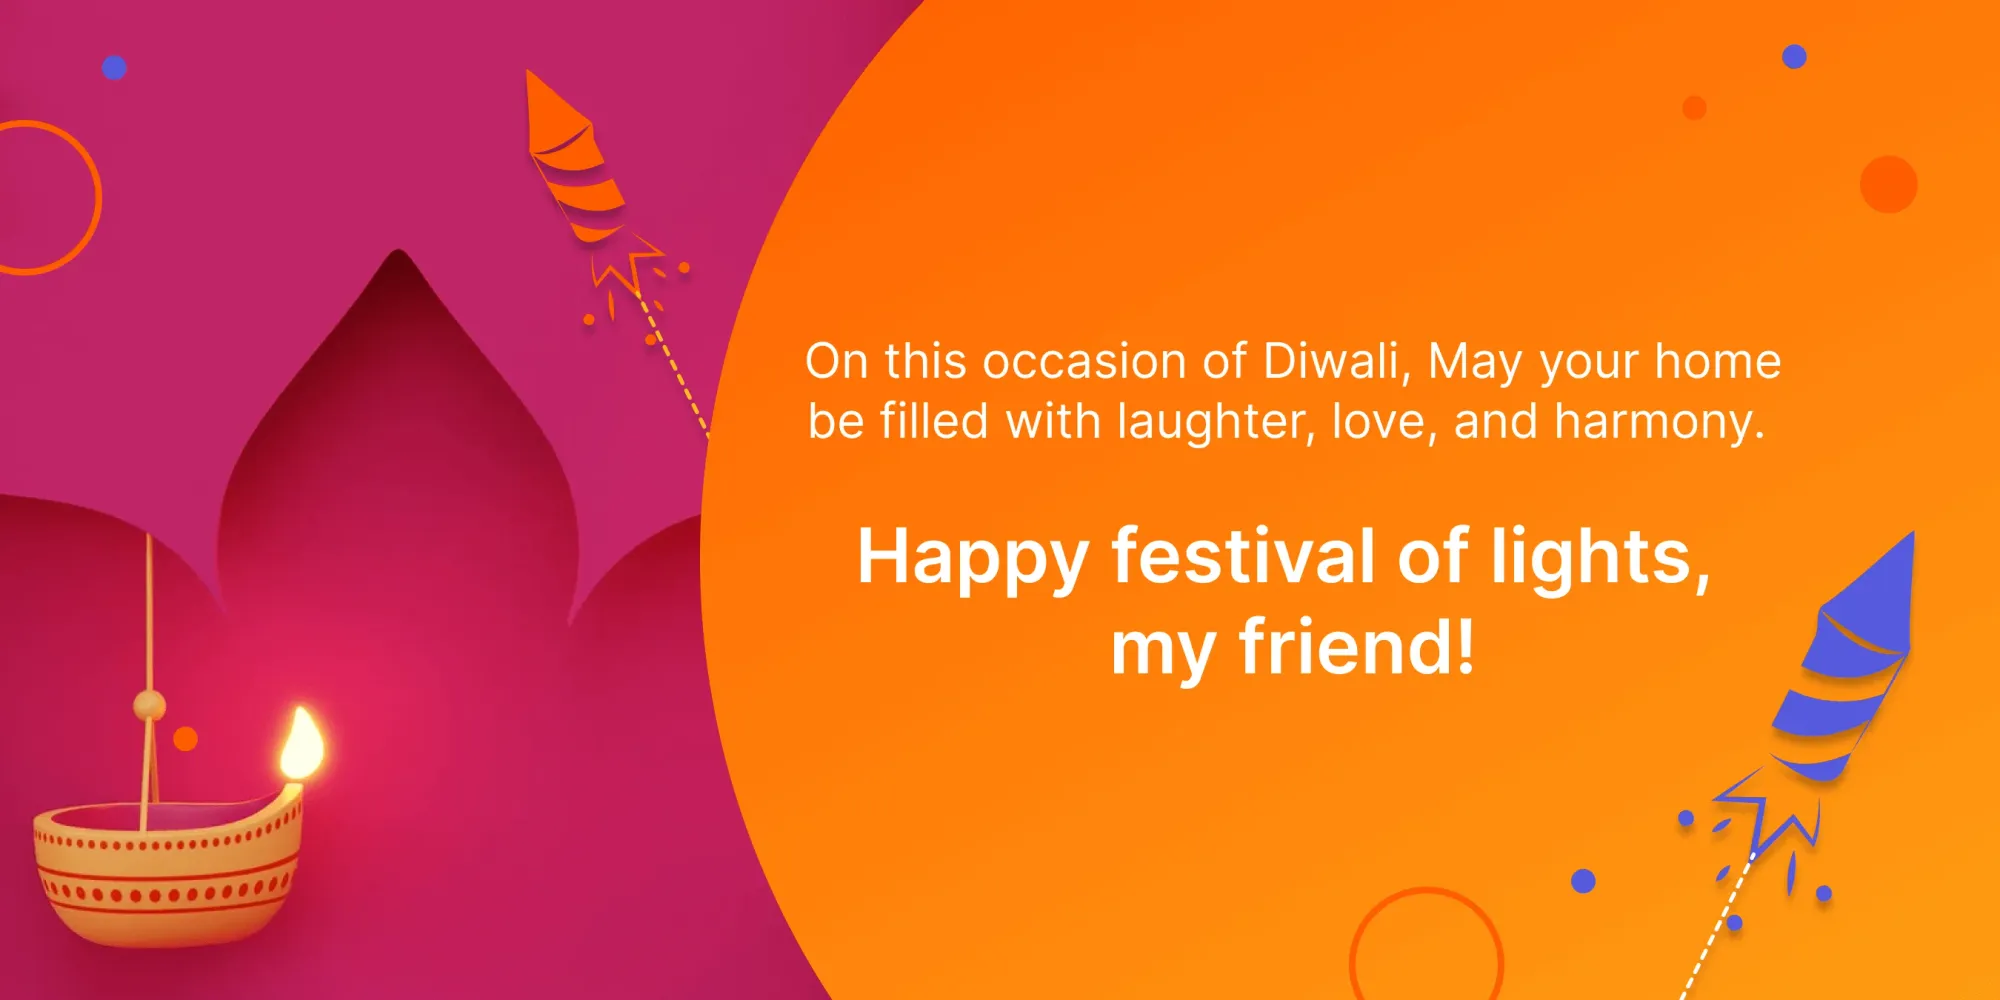 Des vœux de Diwali qui font chaud au cœur pour les collègues